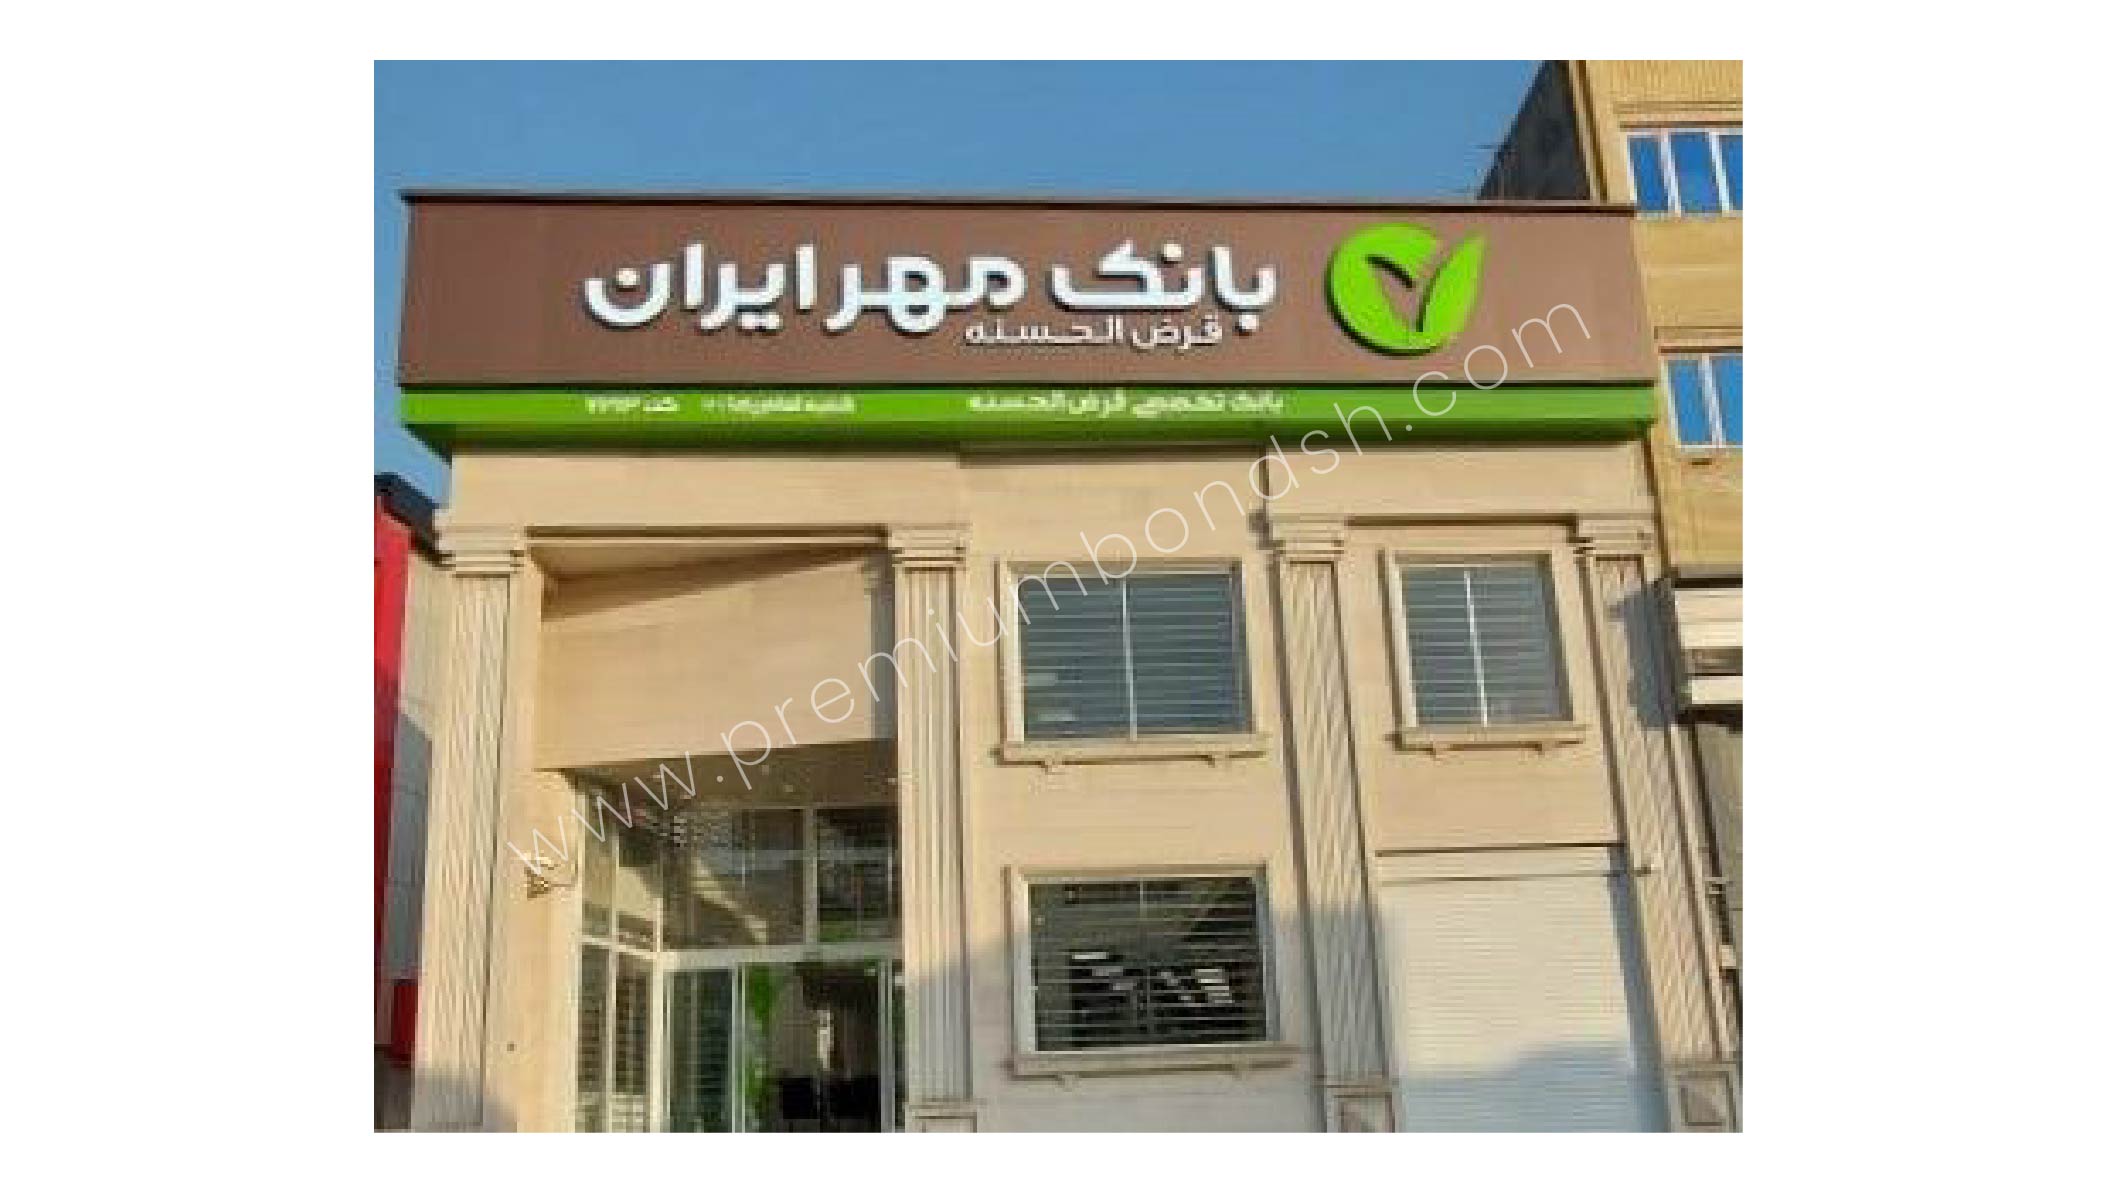 شعب بانک مهر ایران پرمیوم باند